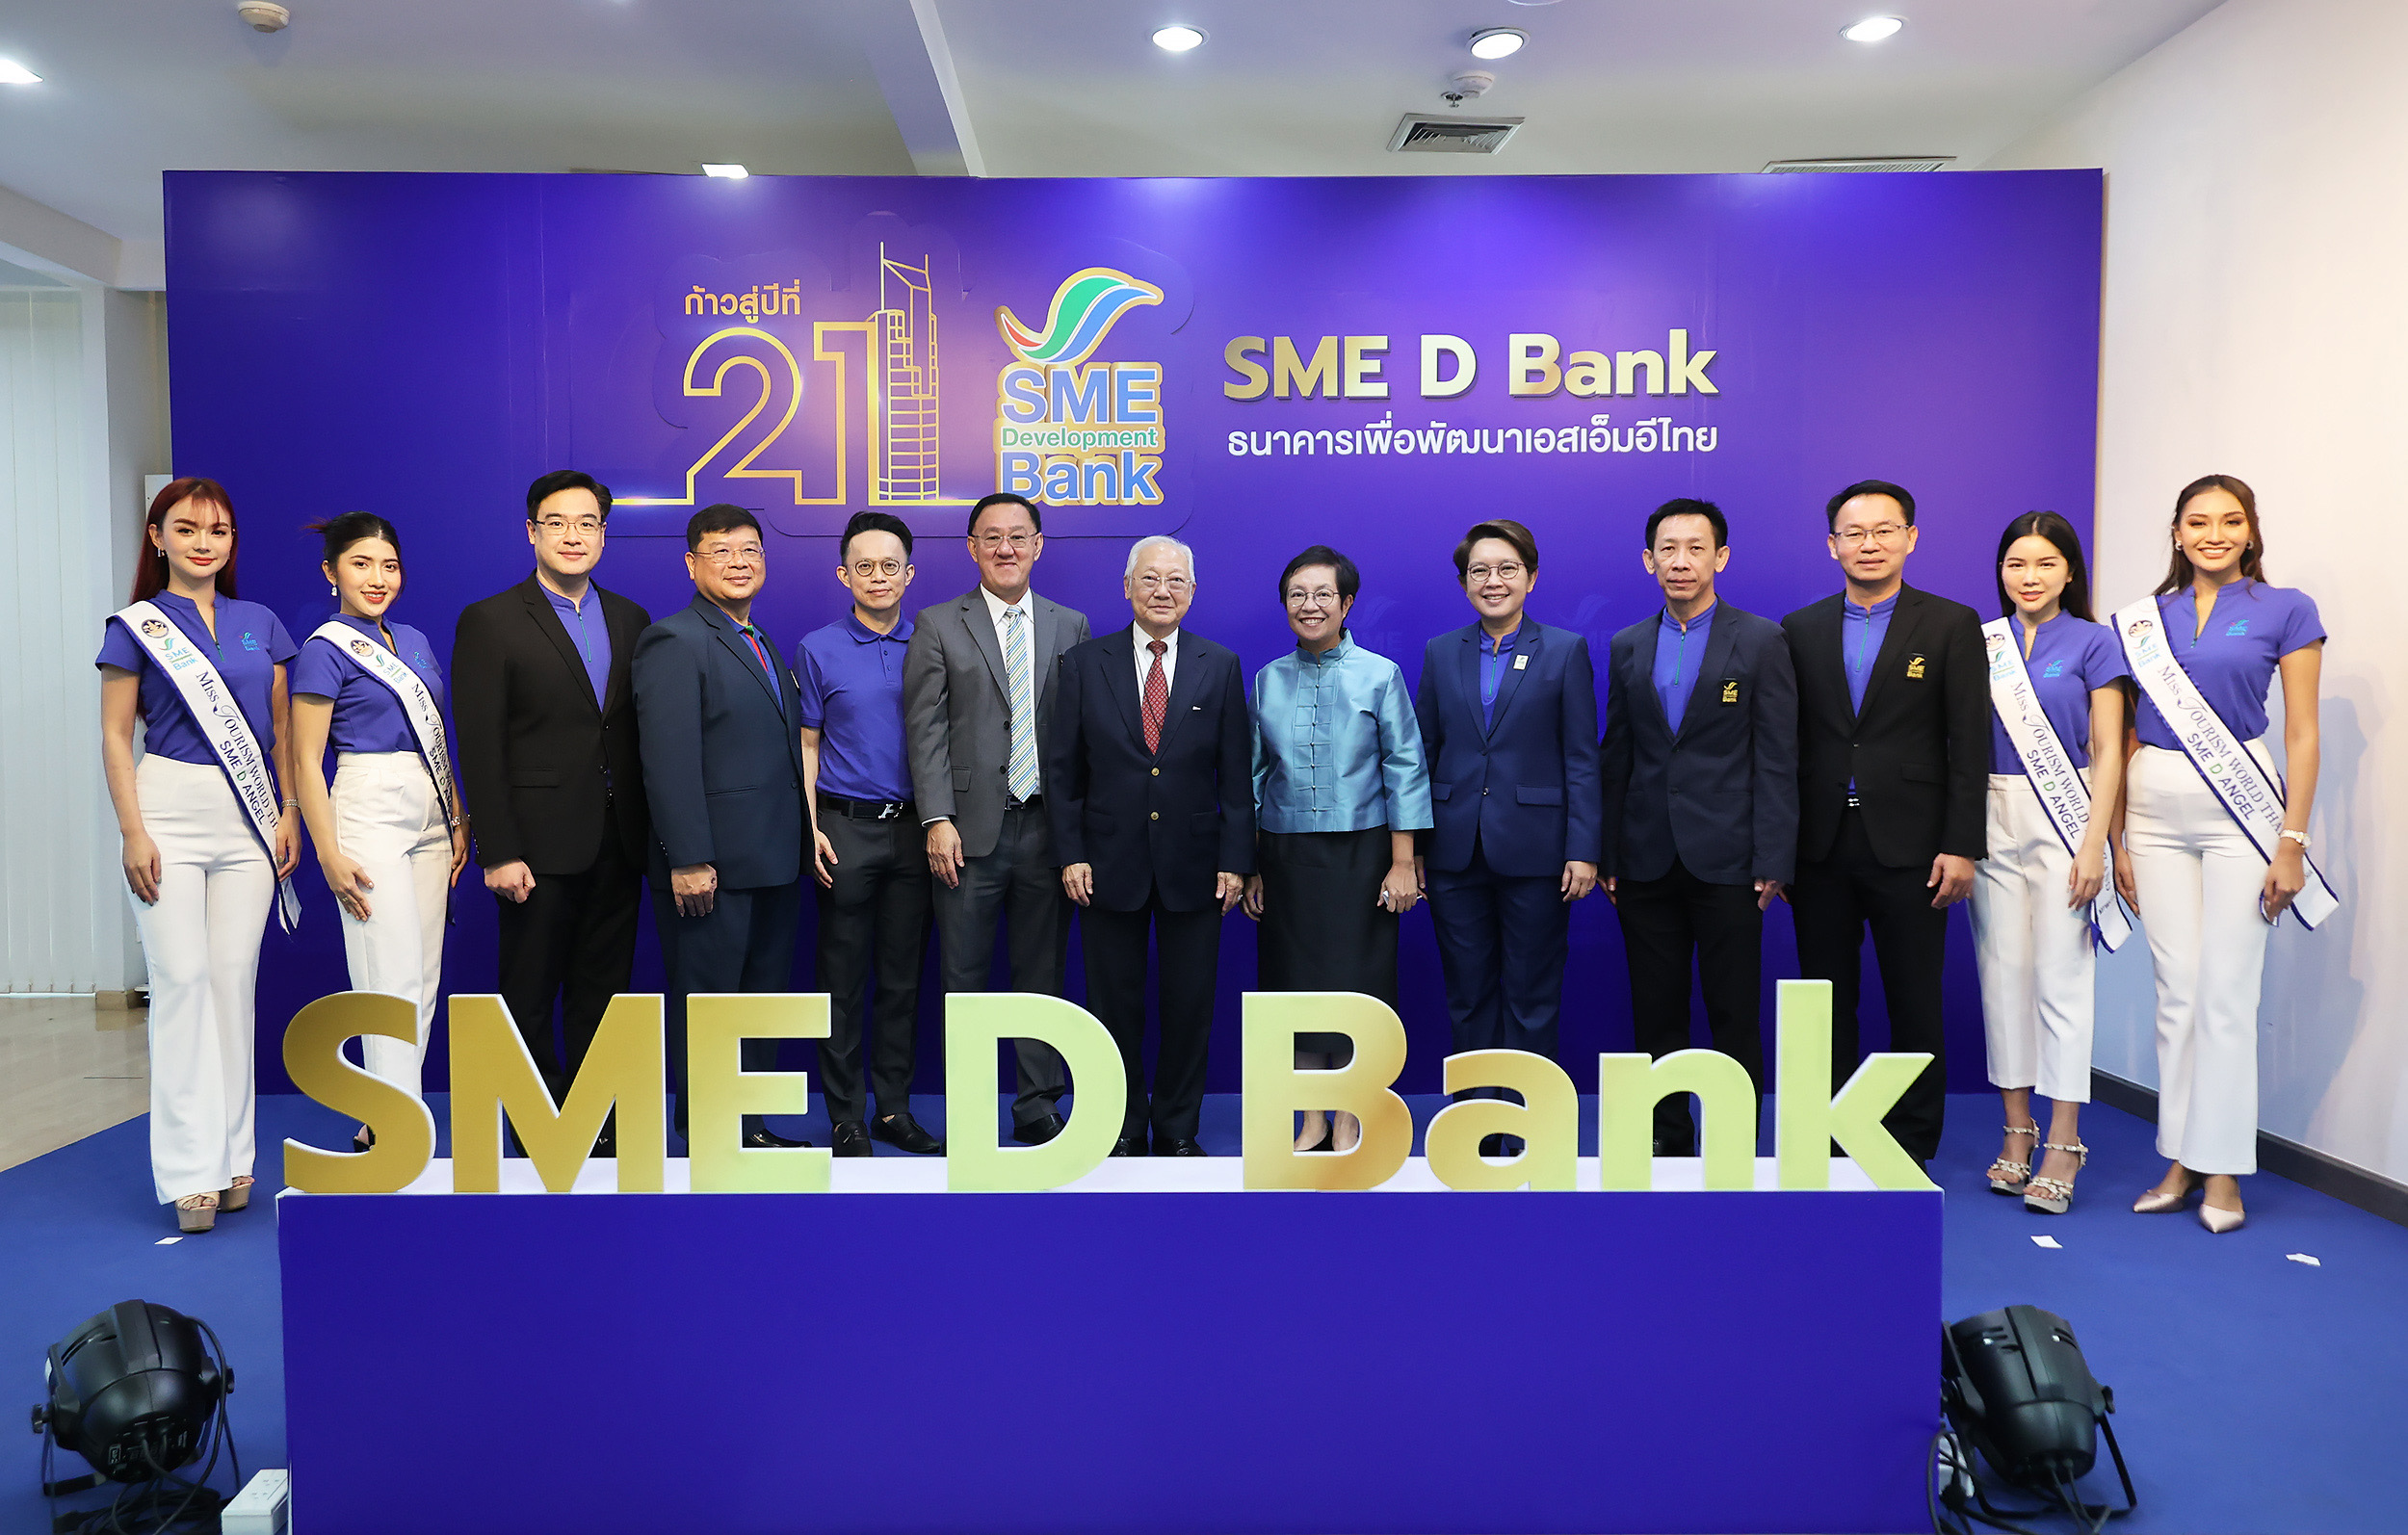 SME D Bank จัดงานครบรอบวันสถาปนา ก้าวสู่ปีที่ 21 เดินหน้าบทบาท “ธนาคารเพื่อพัฒนาเอสเอ็มอีไทย” เติบโตอย่างยั่งยืน